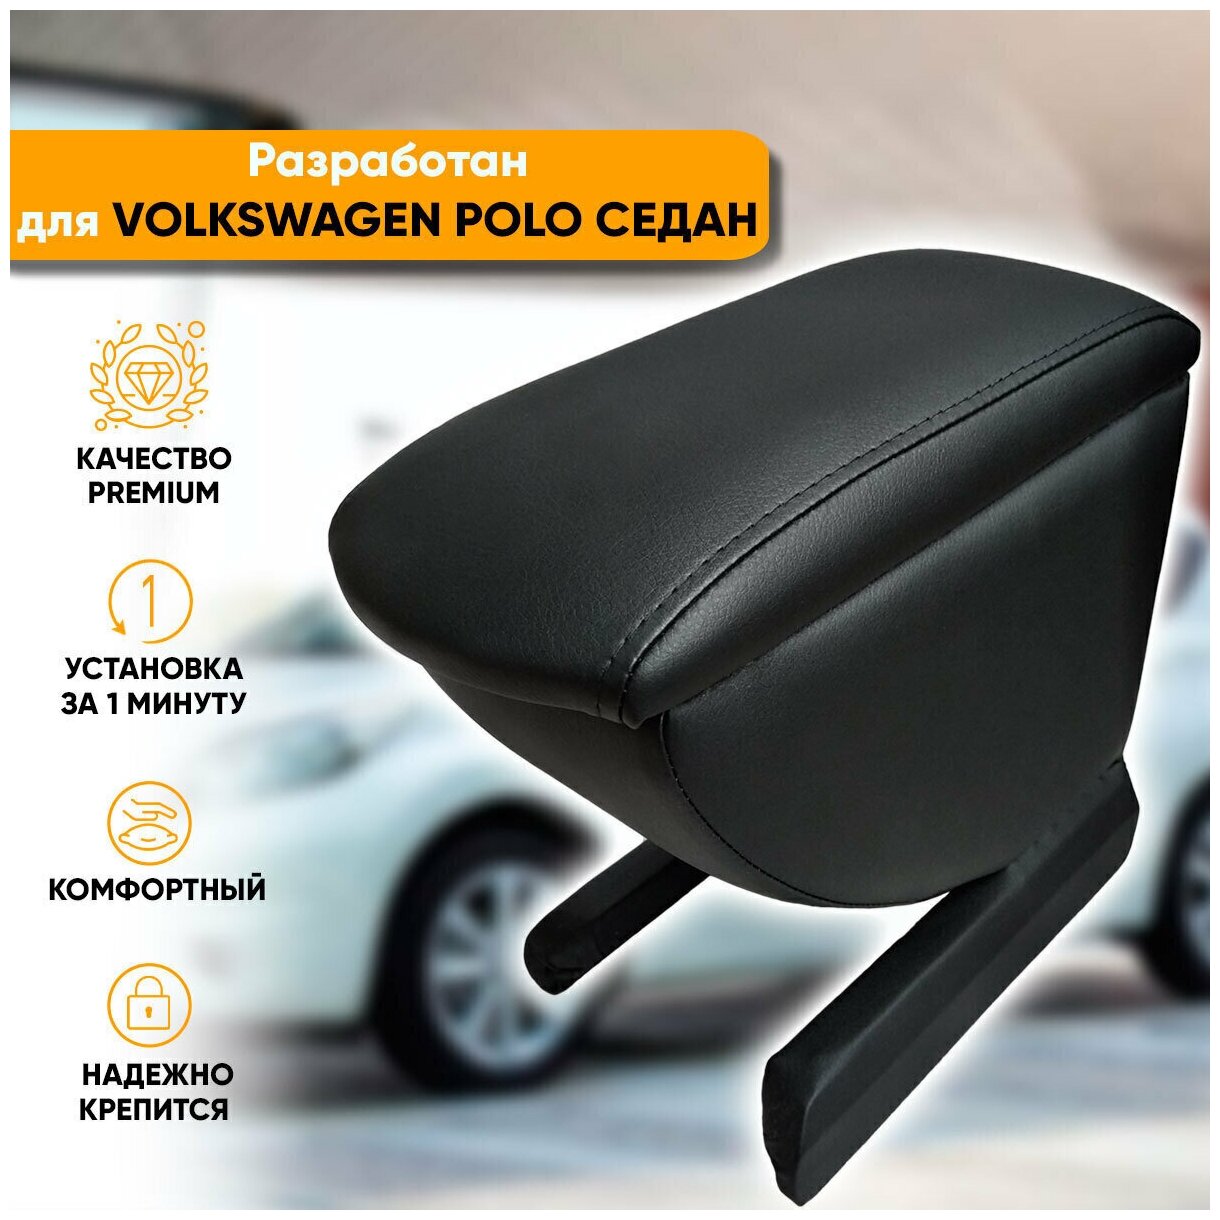 Подлокотник Volkswagen Polo sedan / Фольксваген Поло седан (2010-2020) легкосъемный (без сверления) с деревянным каркасом (+ мягкий поролон и экокожа), цвет черный, исполнение "Премиум"